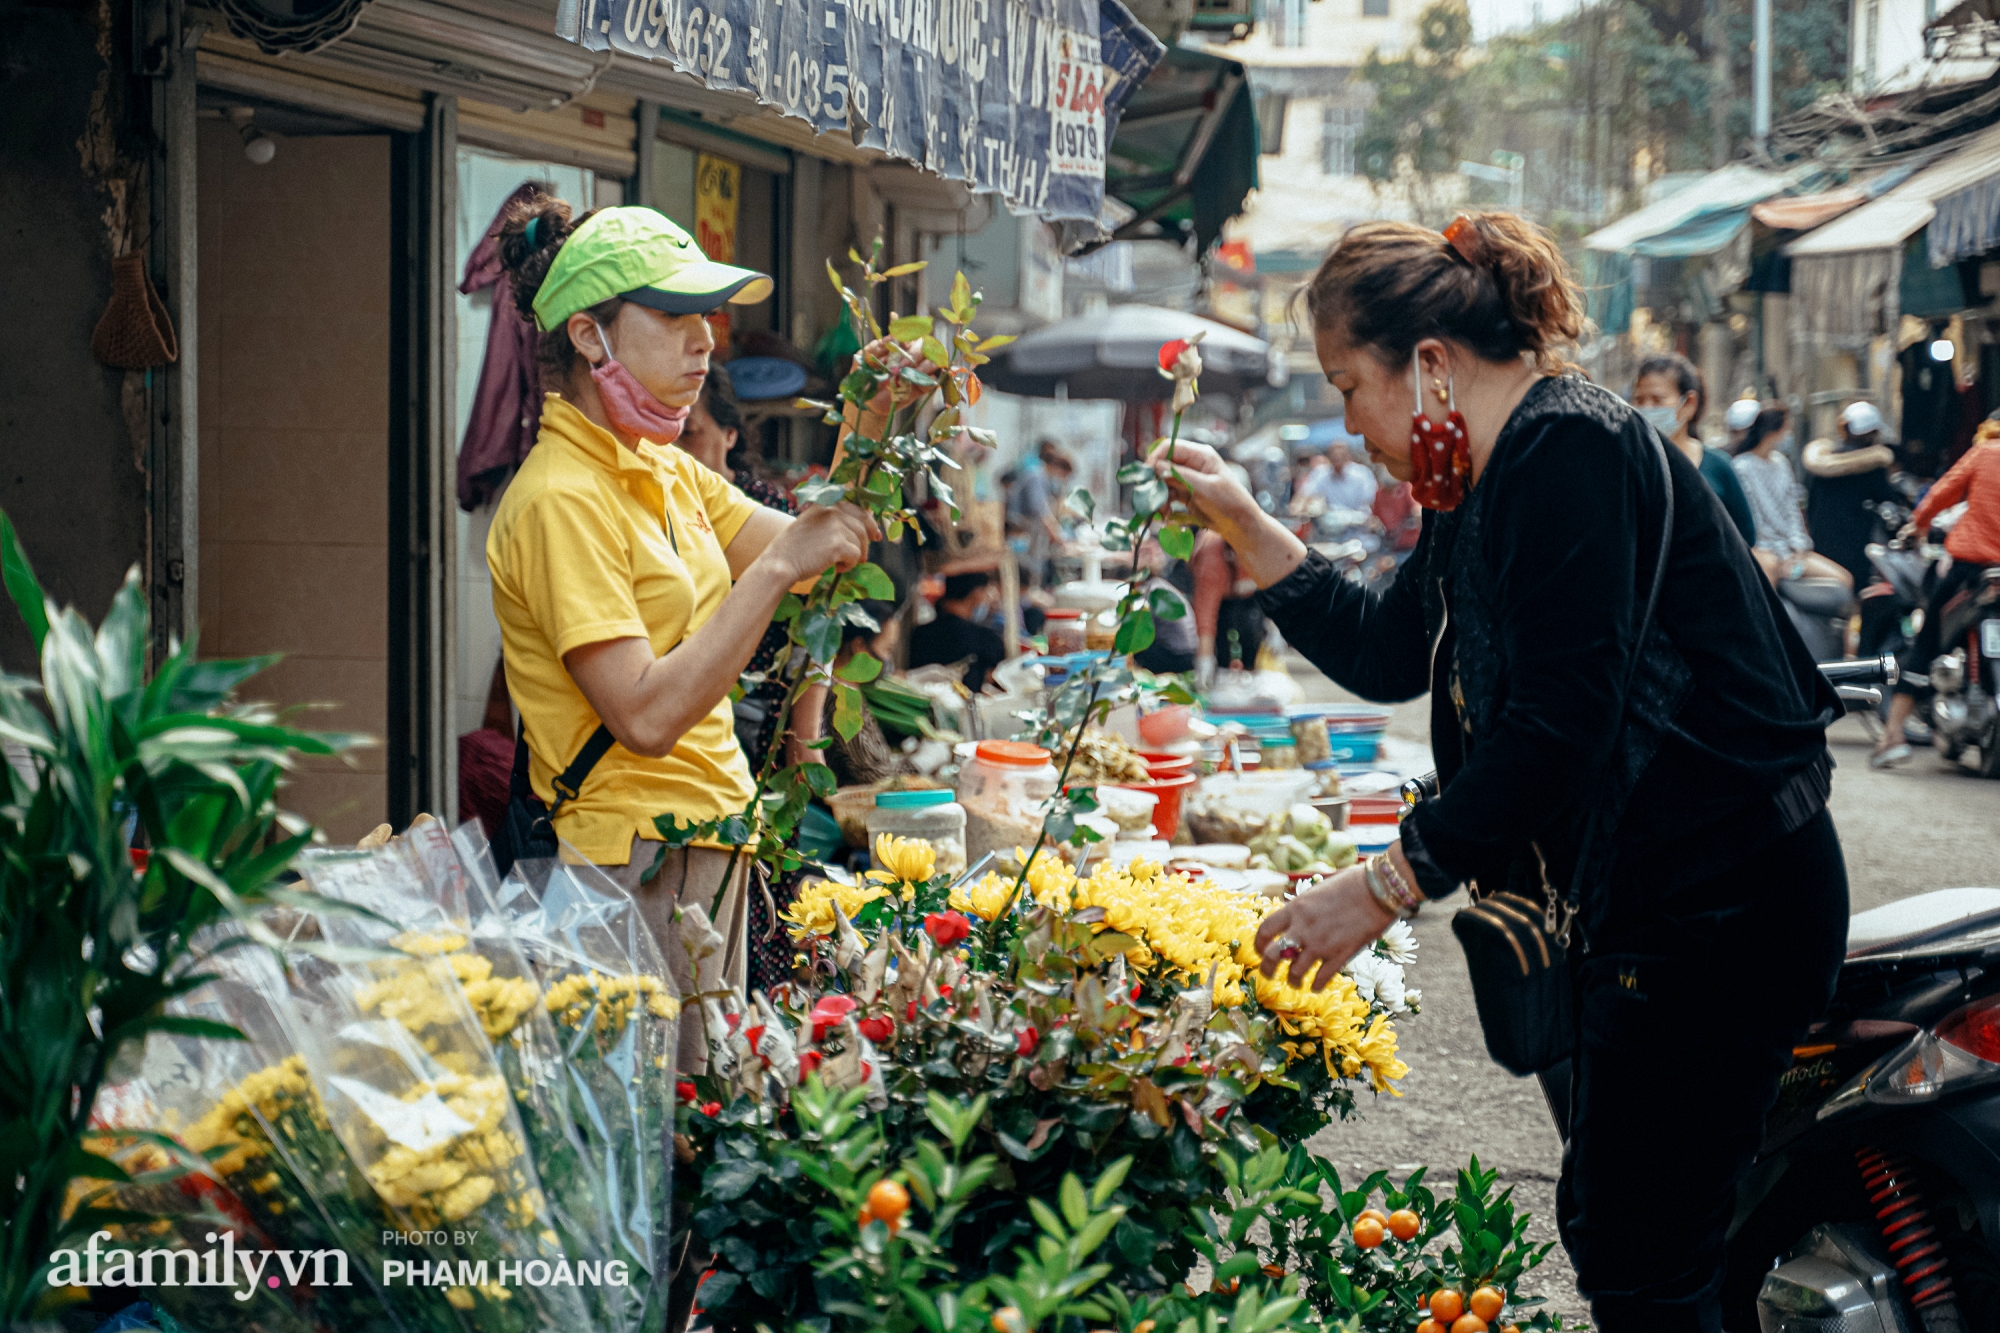 Ngày cuối năm bình yên trong ngõ chợ Thanh Hà - ngôi chợ lâu đời nhất phố cổ được giới nhà giàu chuộng mua vì toàn đồ chất lượng tươi ngon - Ảnh 7.